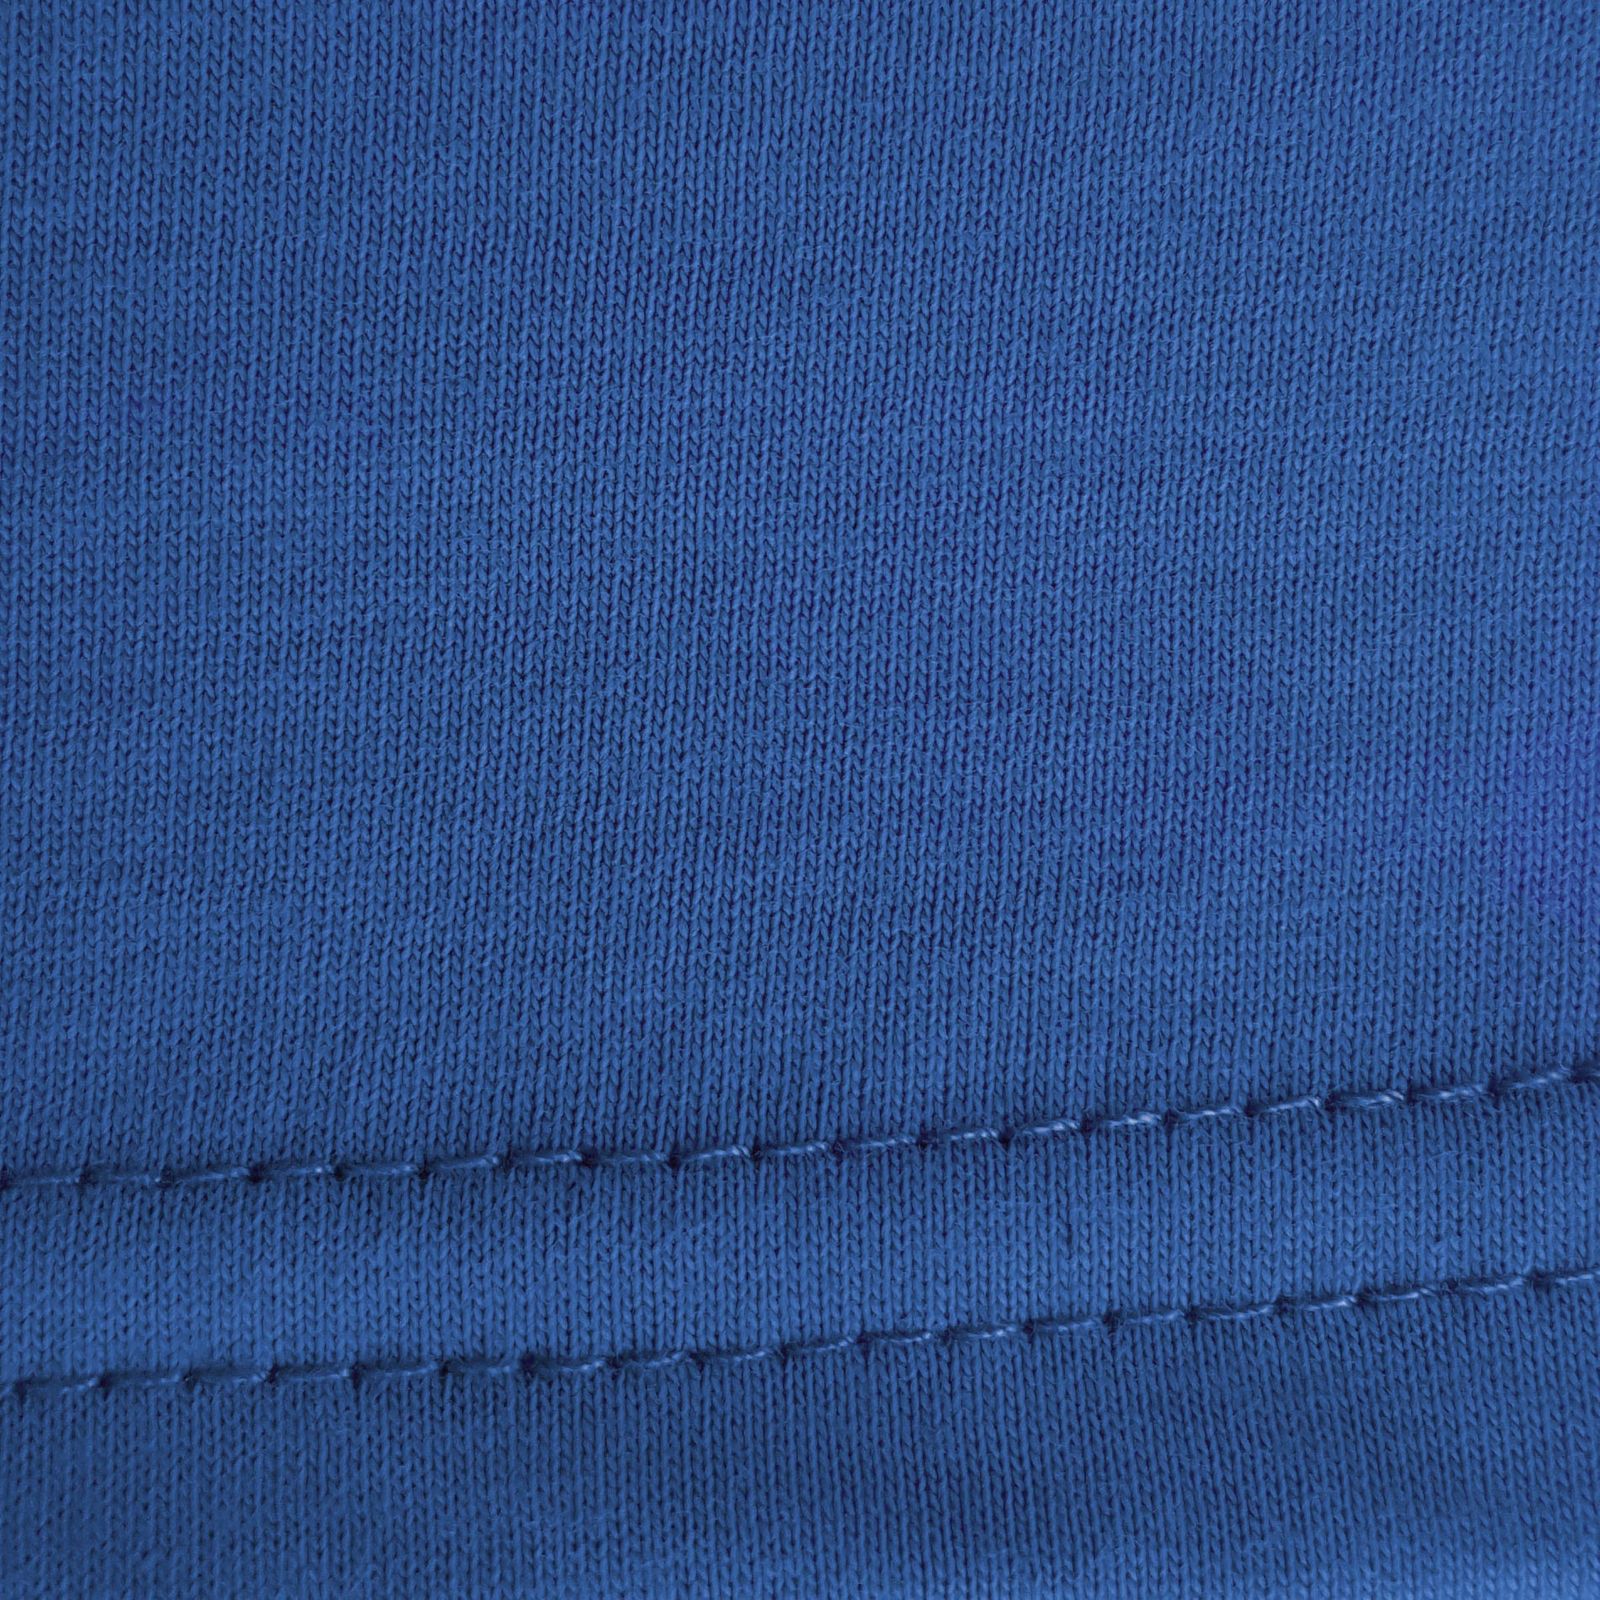 زیرپوش آستین دار مردانه ماییلدا مدل پنبه ای کد 4710 رنگ آبی -  - 7